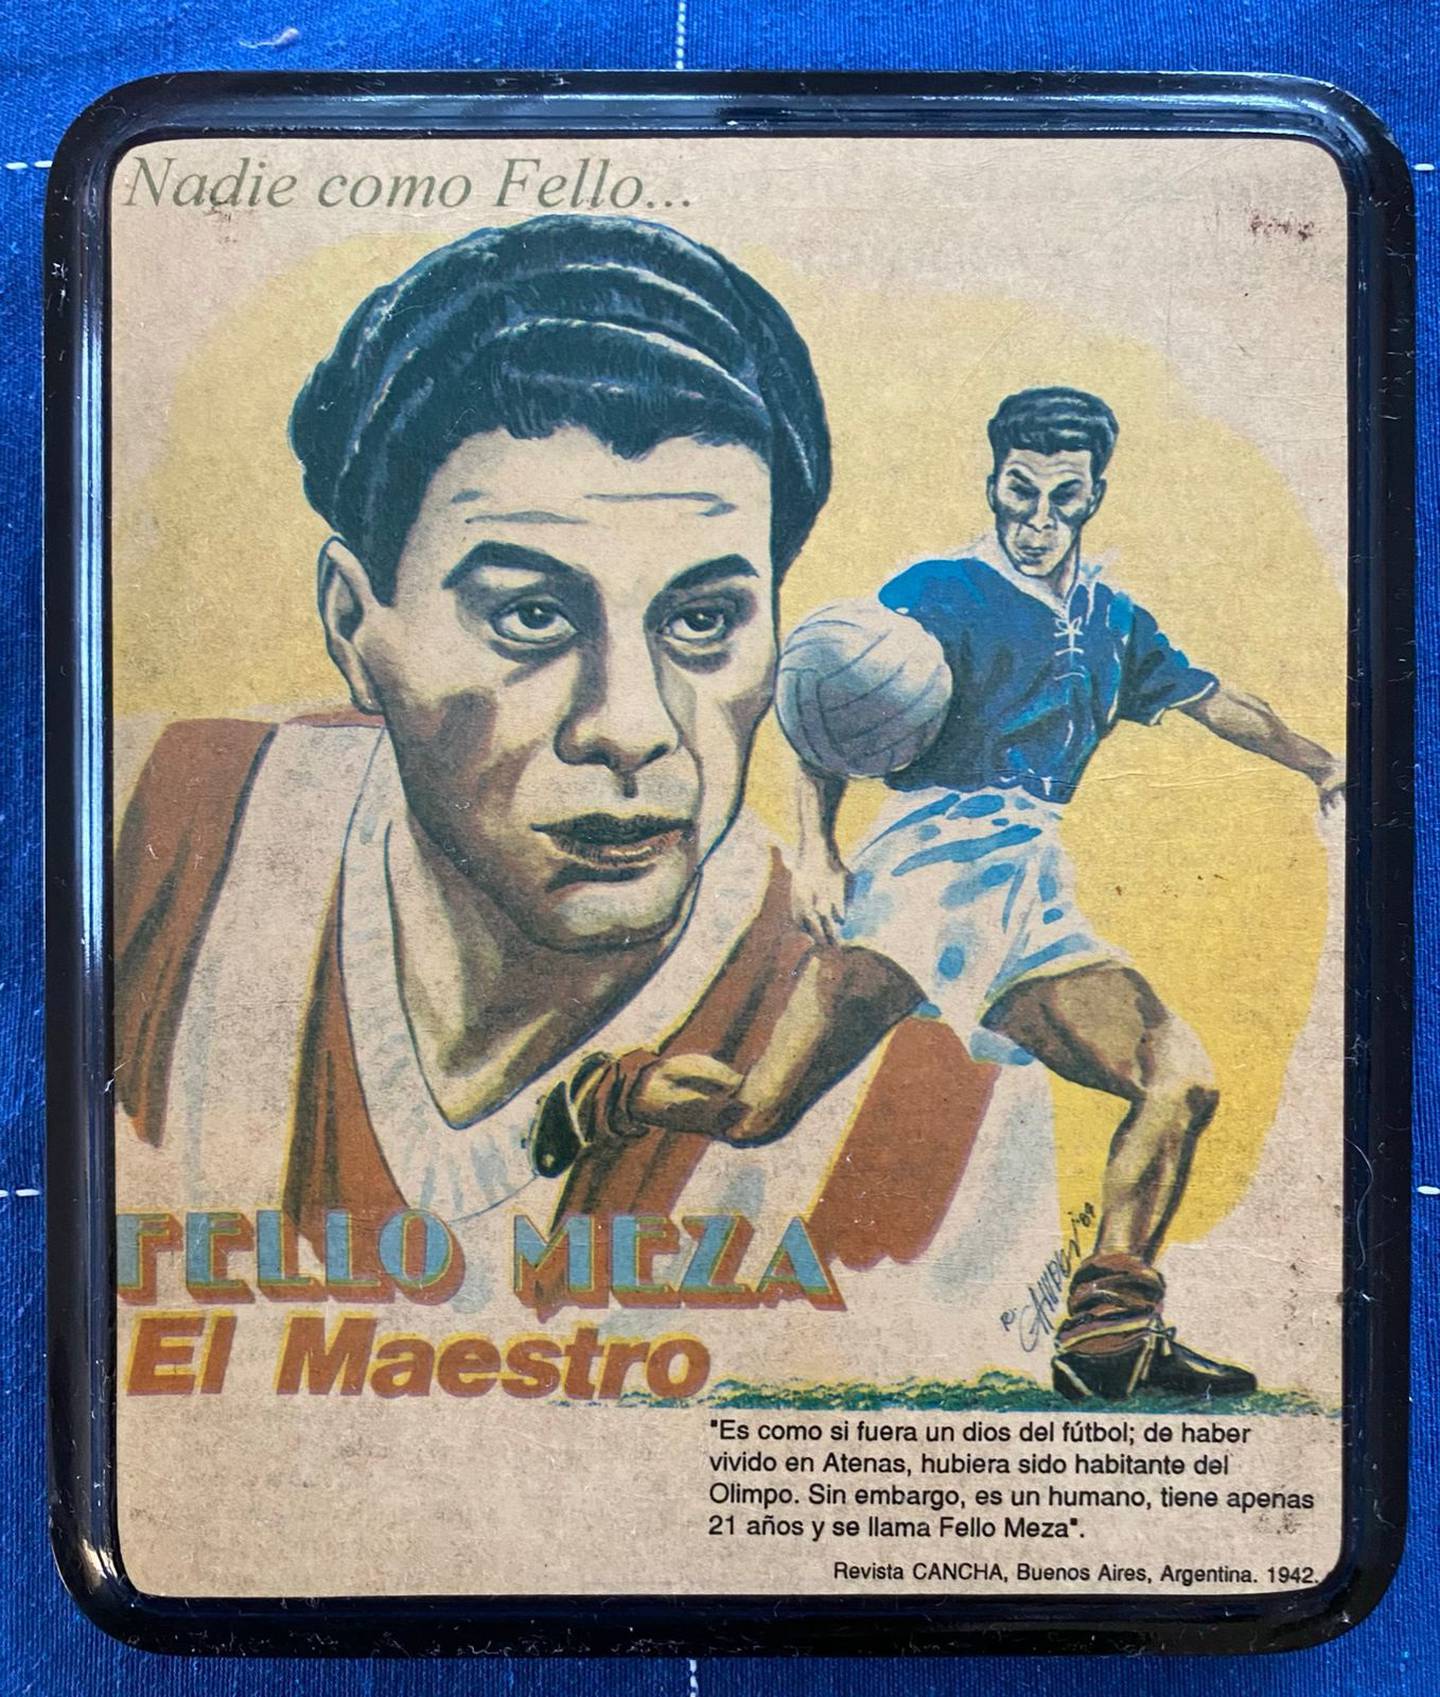 Fello Meza es uno de los jugadores más emblemáticos del país. Cortesía.